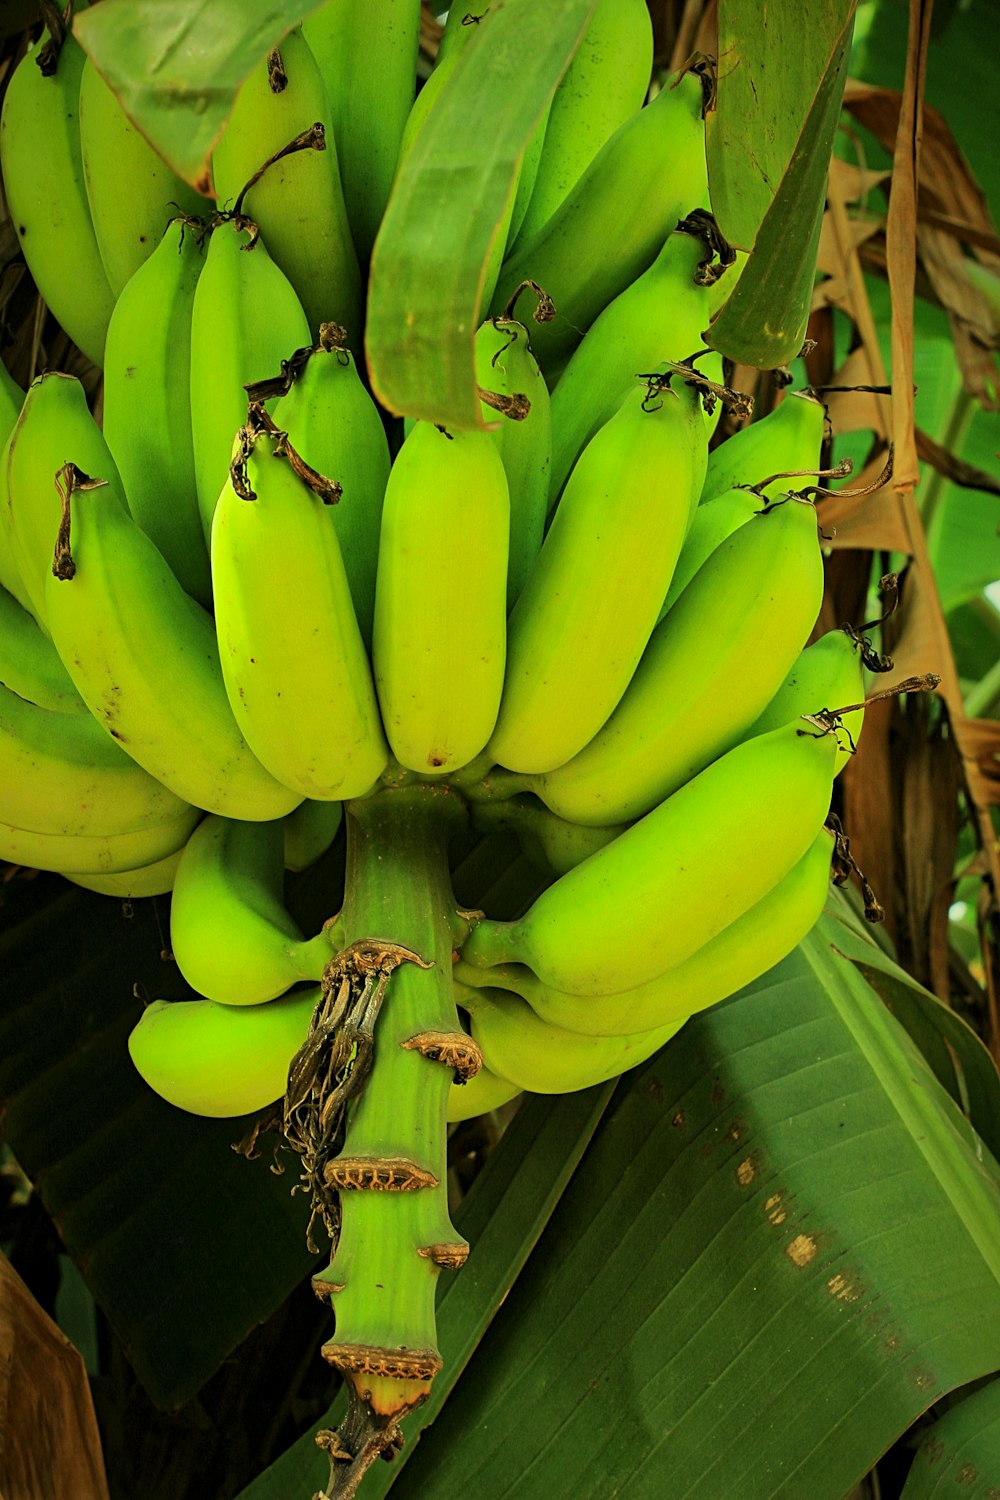 Ein Haufen grüner Bananen, die an einem Baum hängen